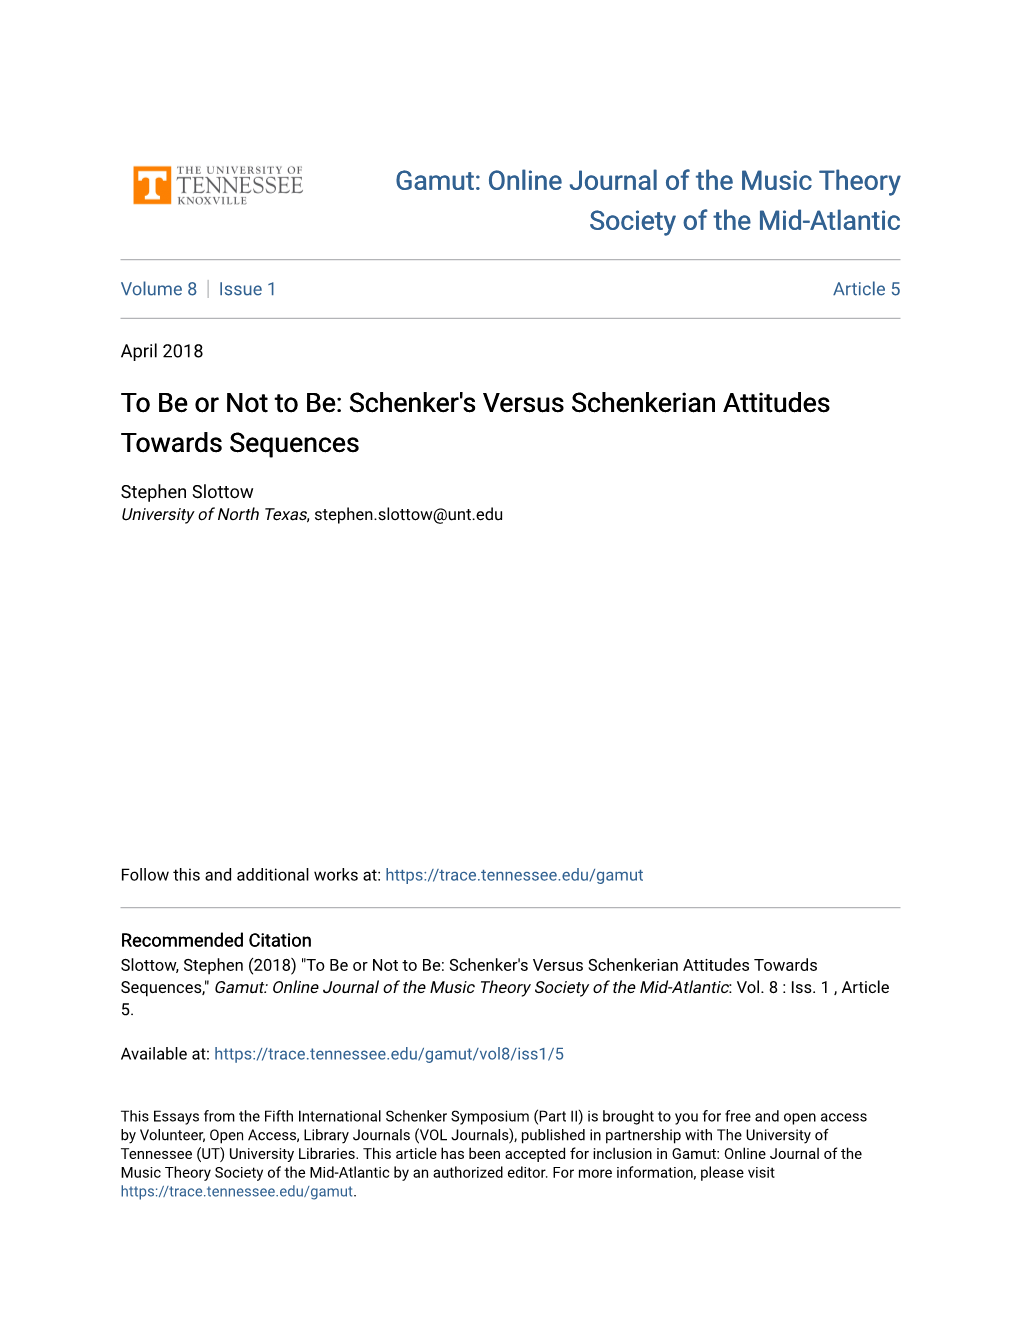 Schenker's Versus Schenkerian Attitudes Towards Sequences